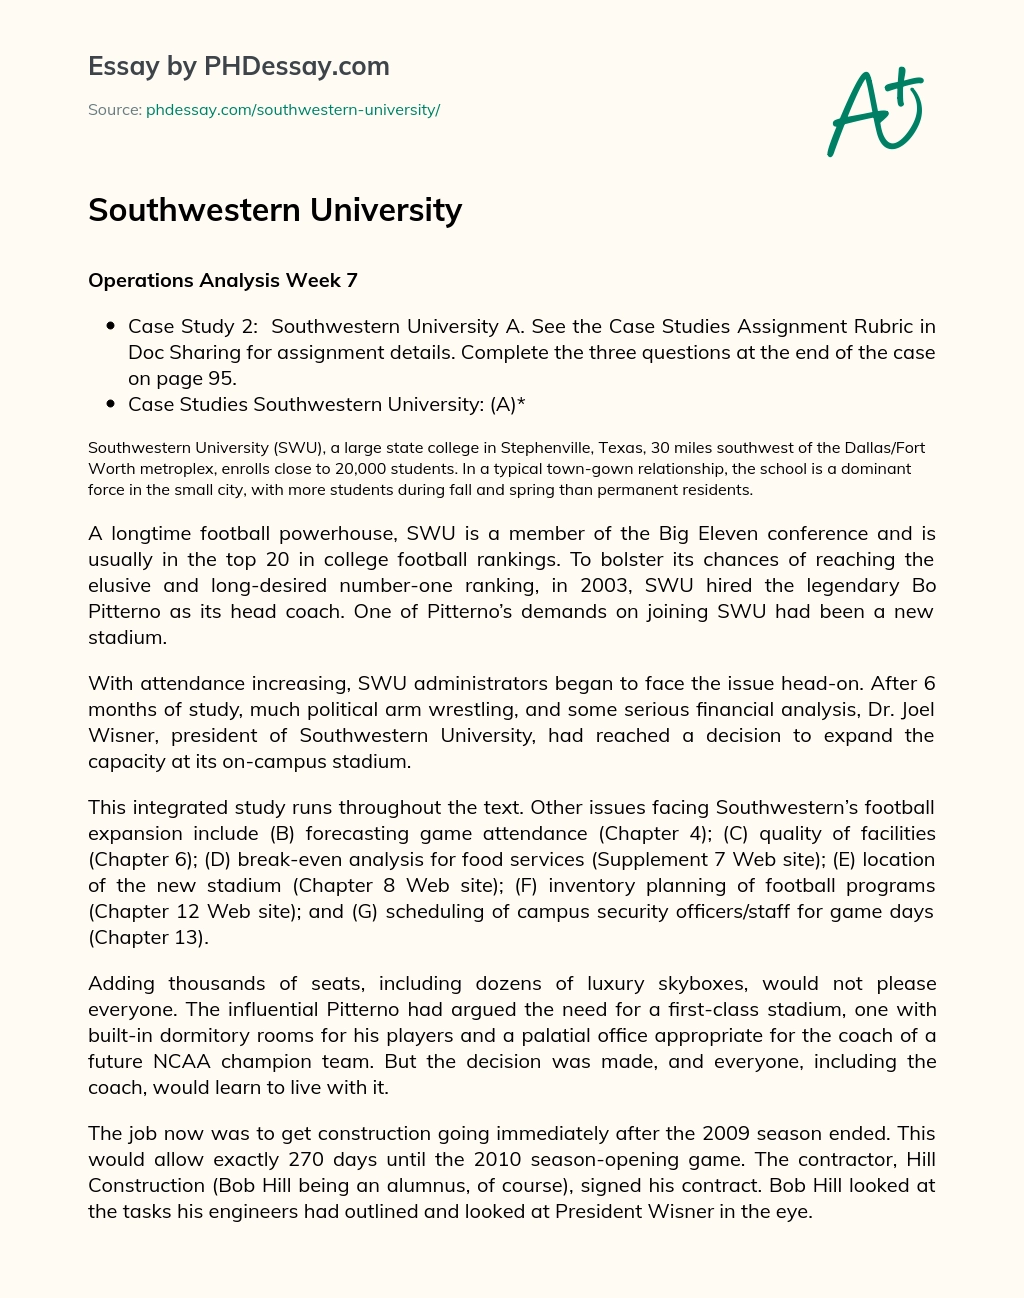 Southwestern University essay